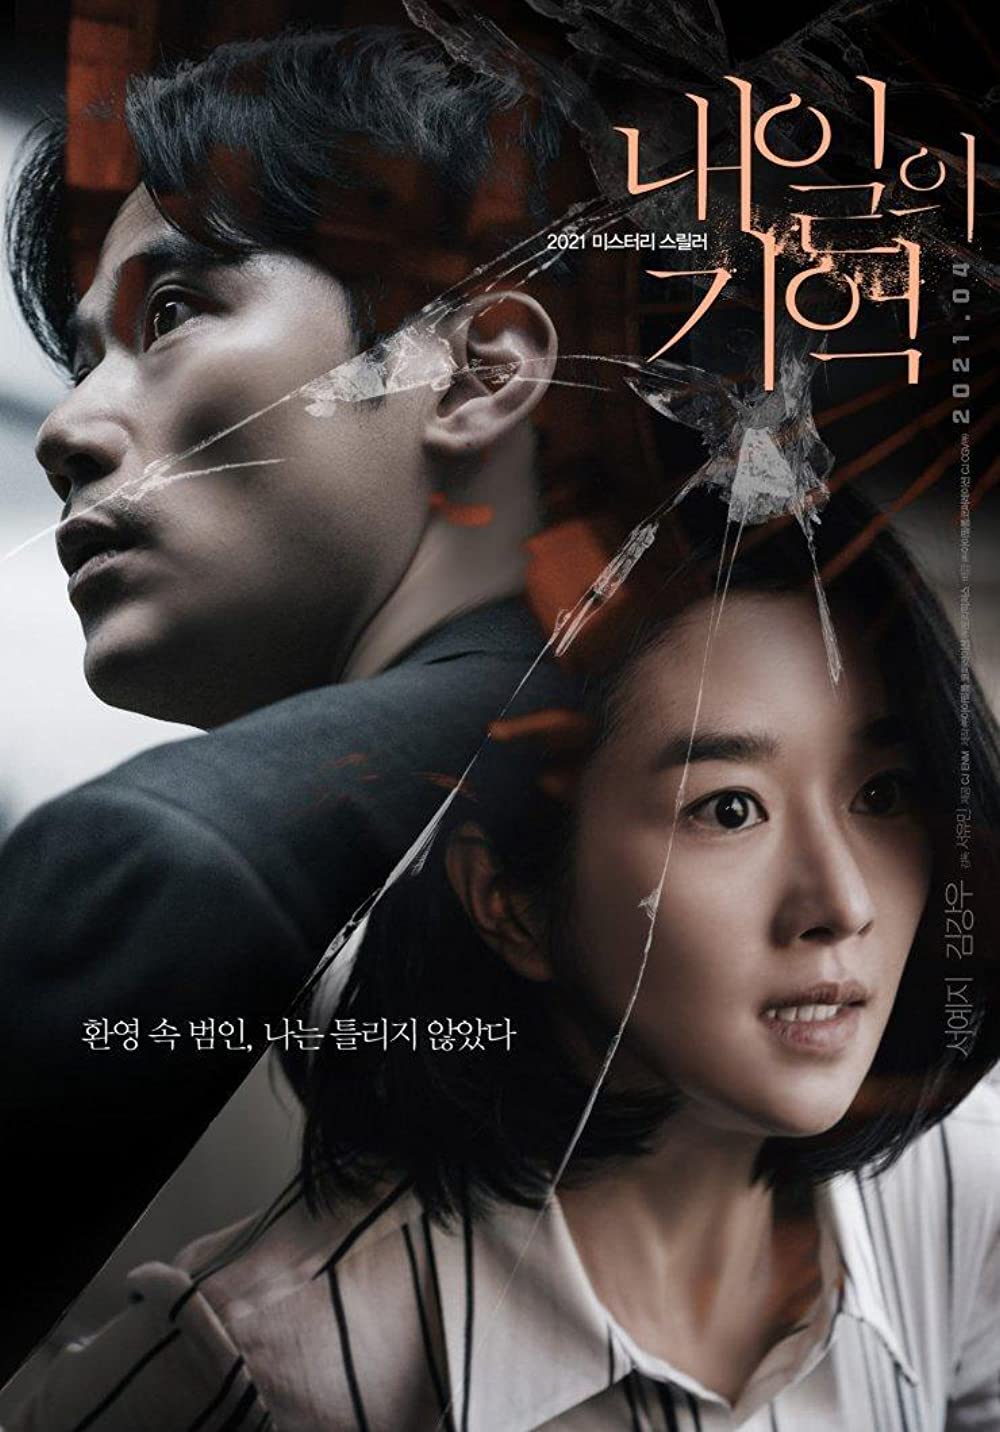 11 Film Korea action populer, banyak baku hantam yang menegangkan